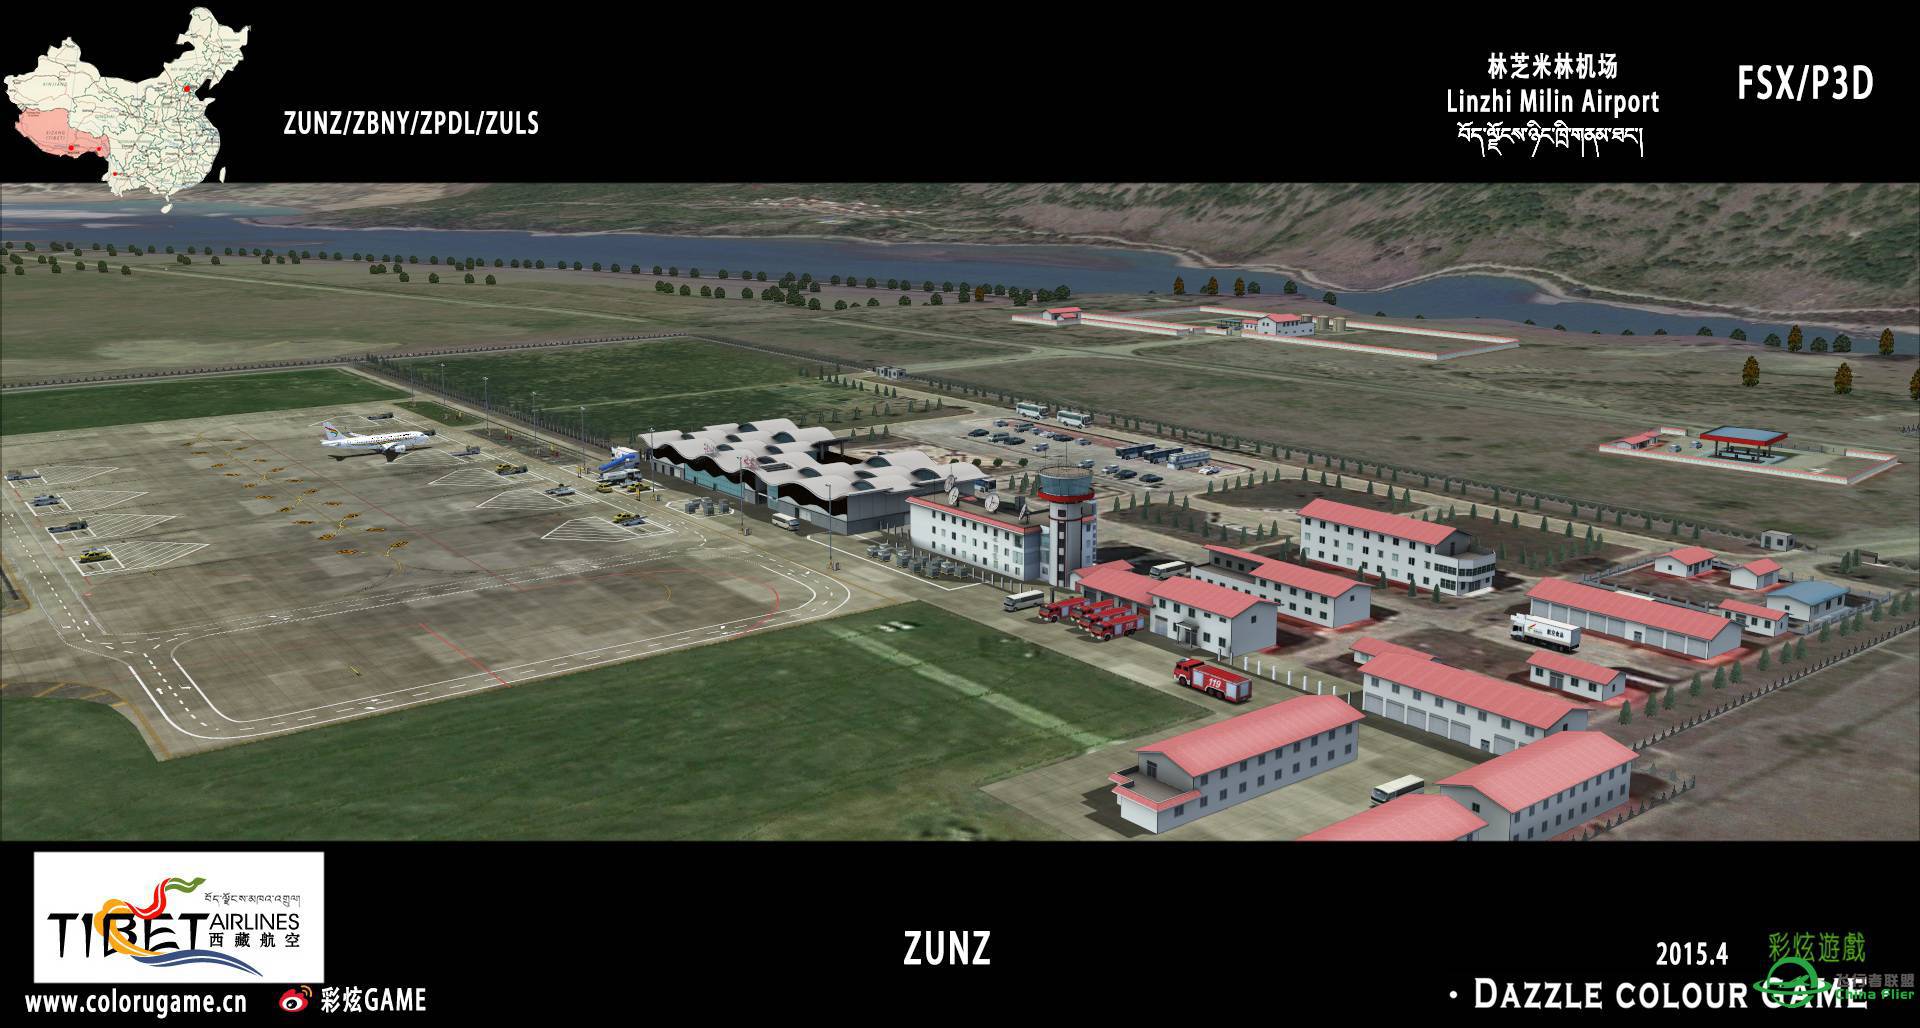 彩炫地景：林芝米林机场（ZUNZ）正式发布！-6754 